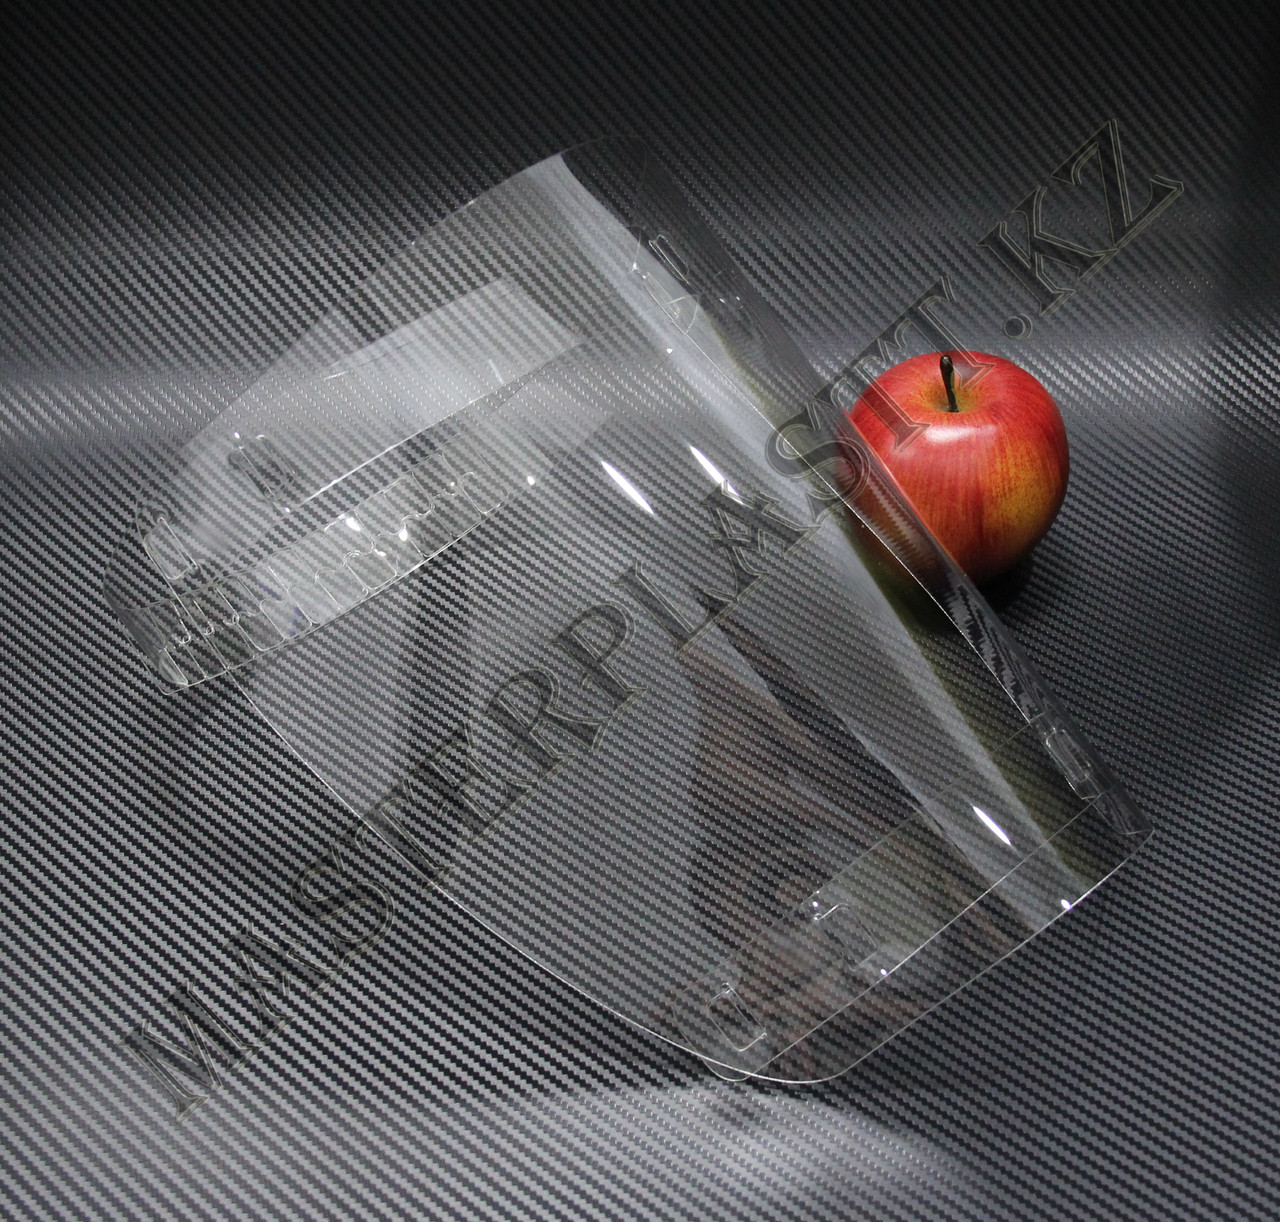 Маска для защиты лица пластмассовая, фото 1